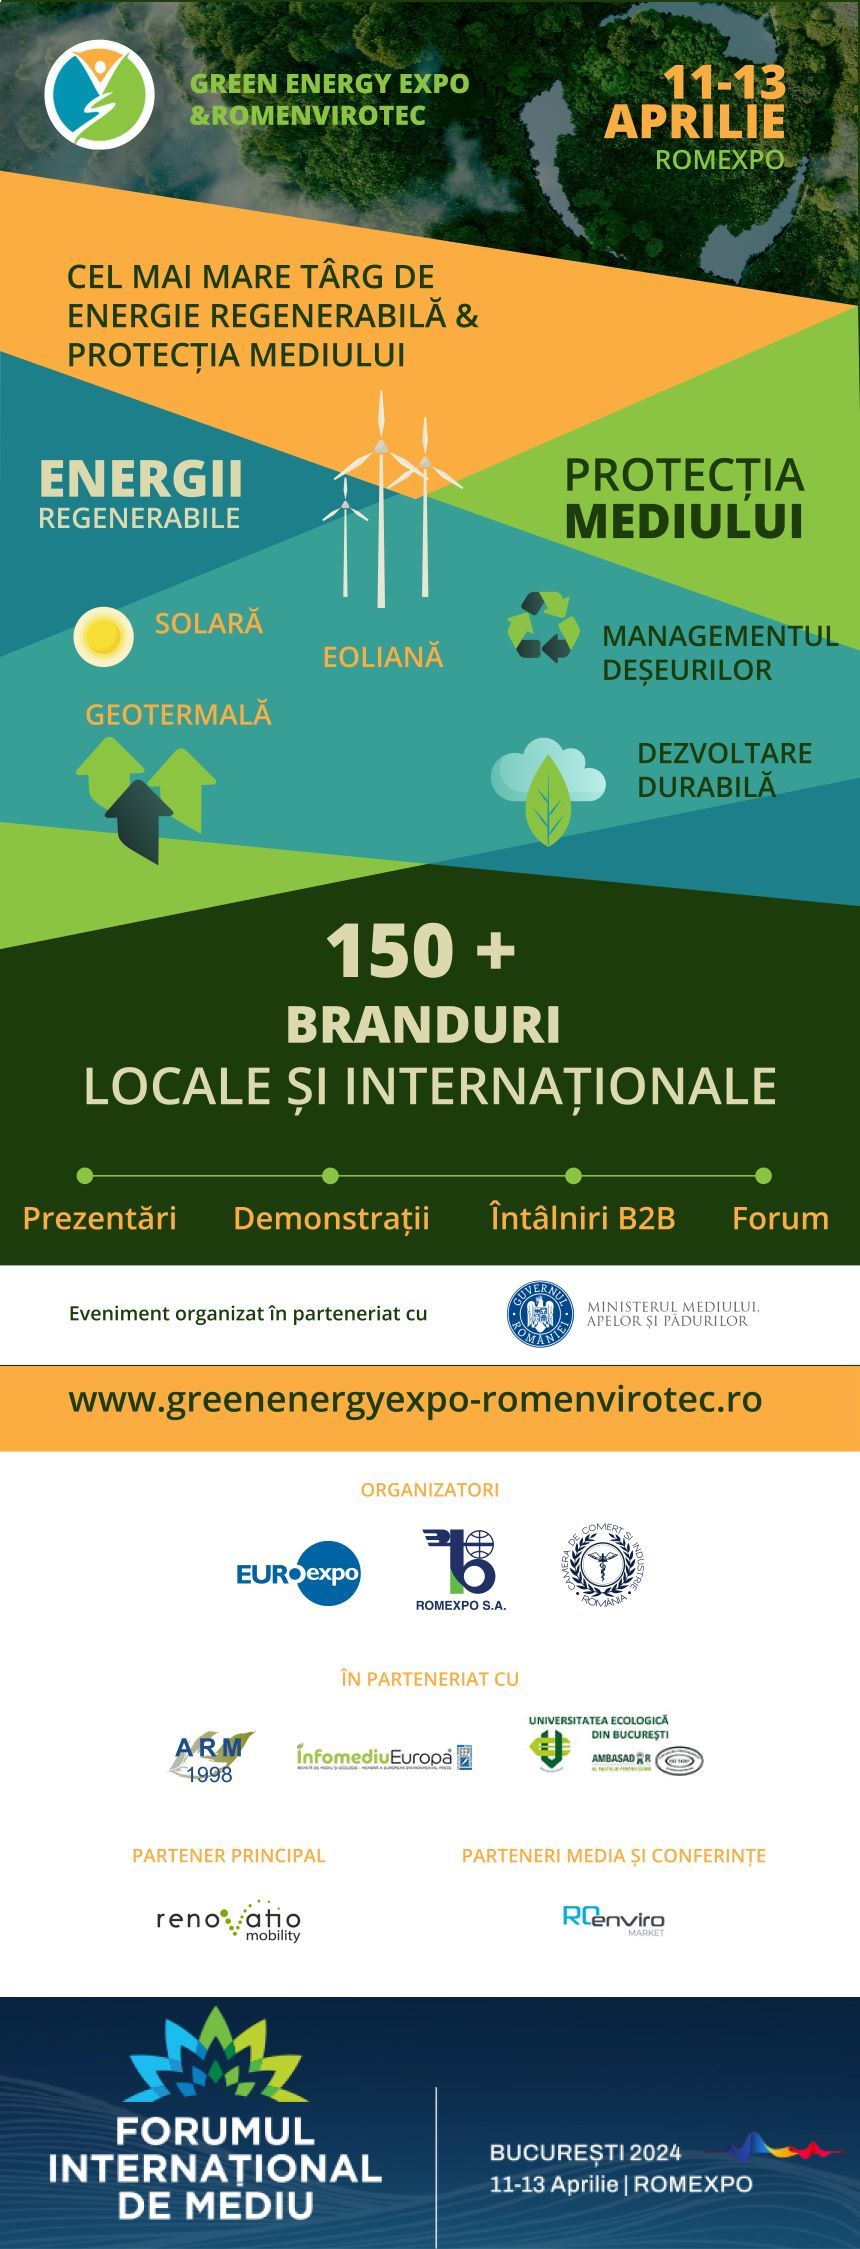 Cel mai mare târg de energii regenerabile şi protecţia mediului, în perioada 11 - 13 aprilie, la Romexpo.  Peste 150 de brand-uri din domeniul energetic şi din domeniul protecţiei mediului şi-au anunţat participarea